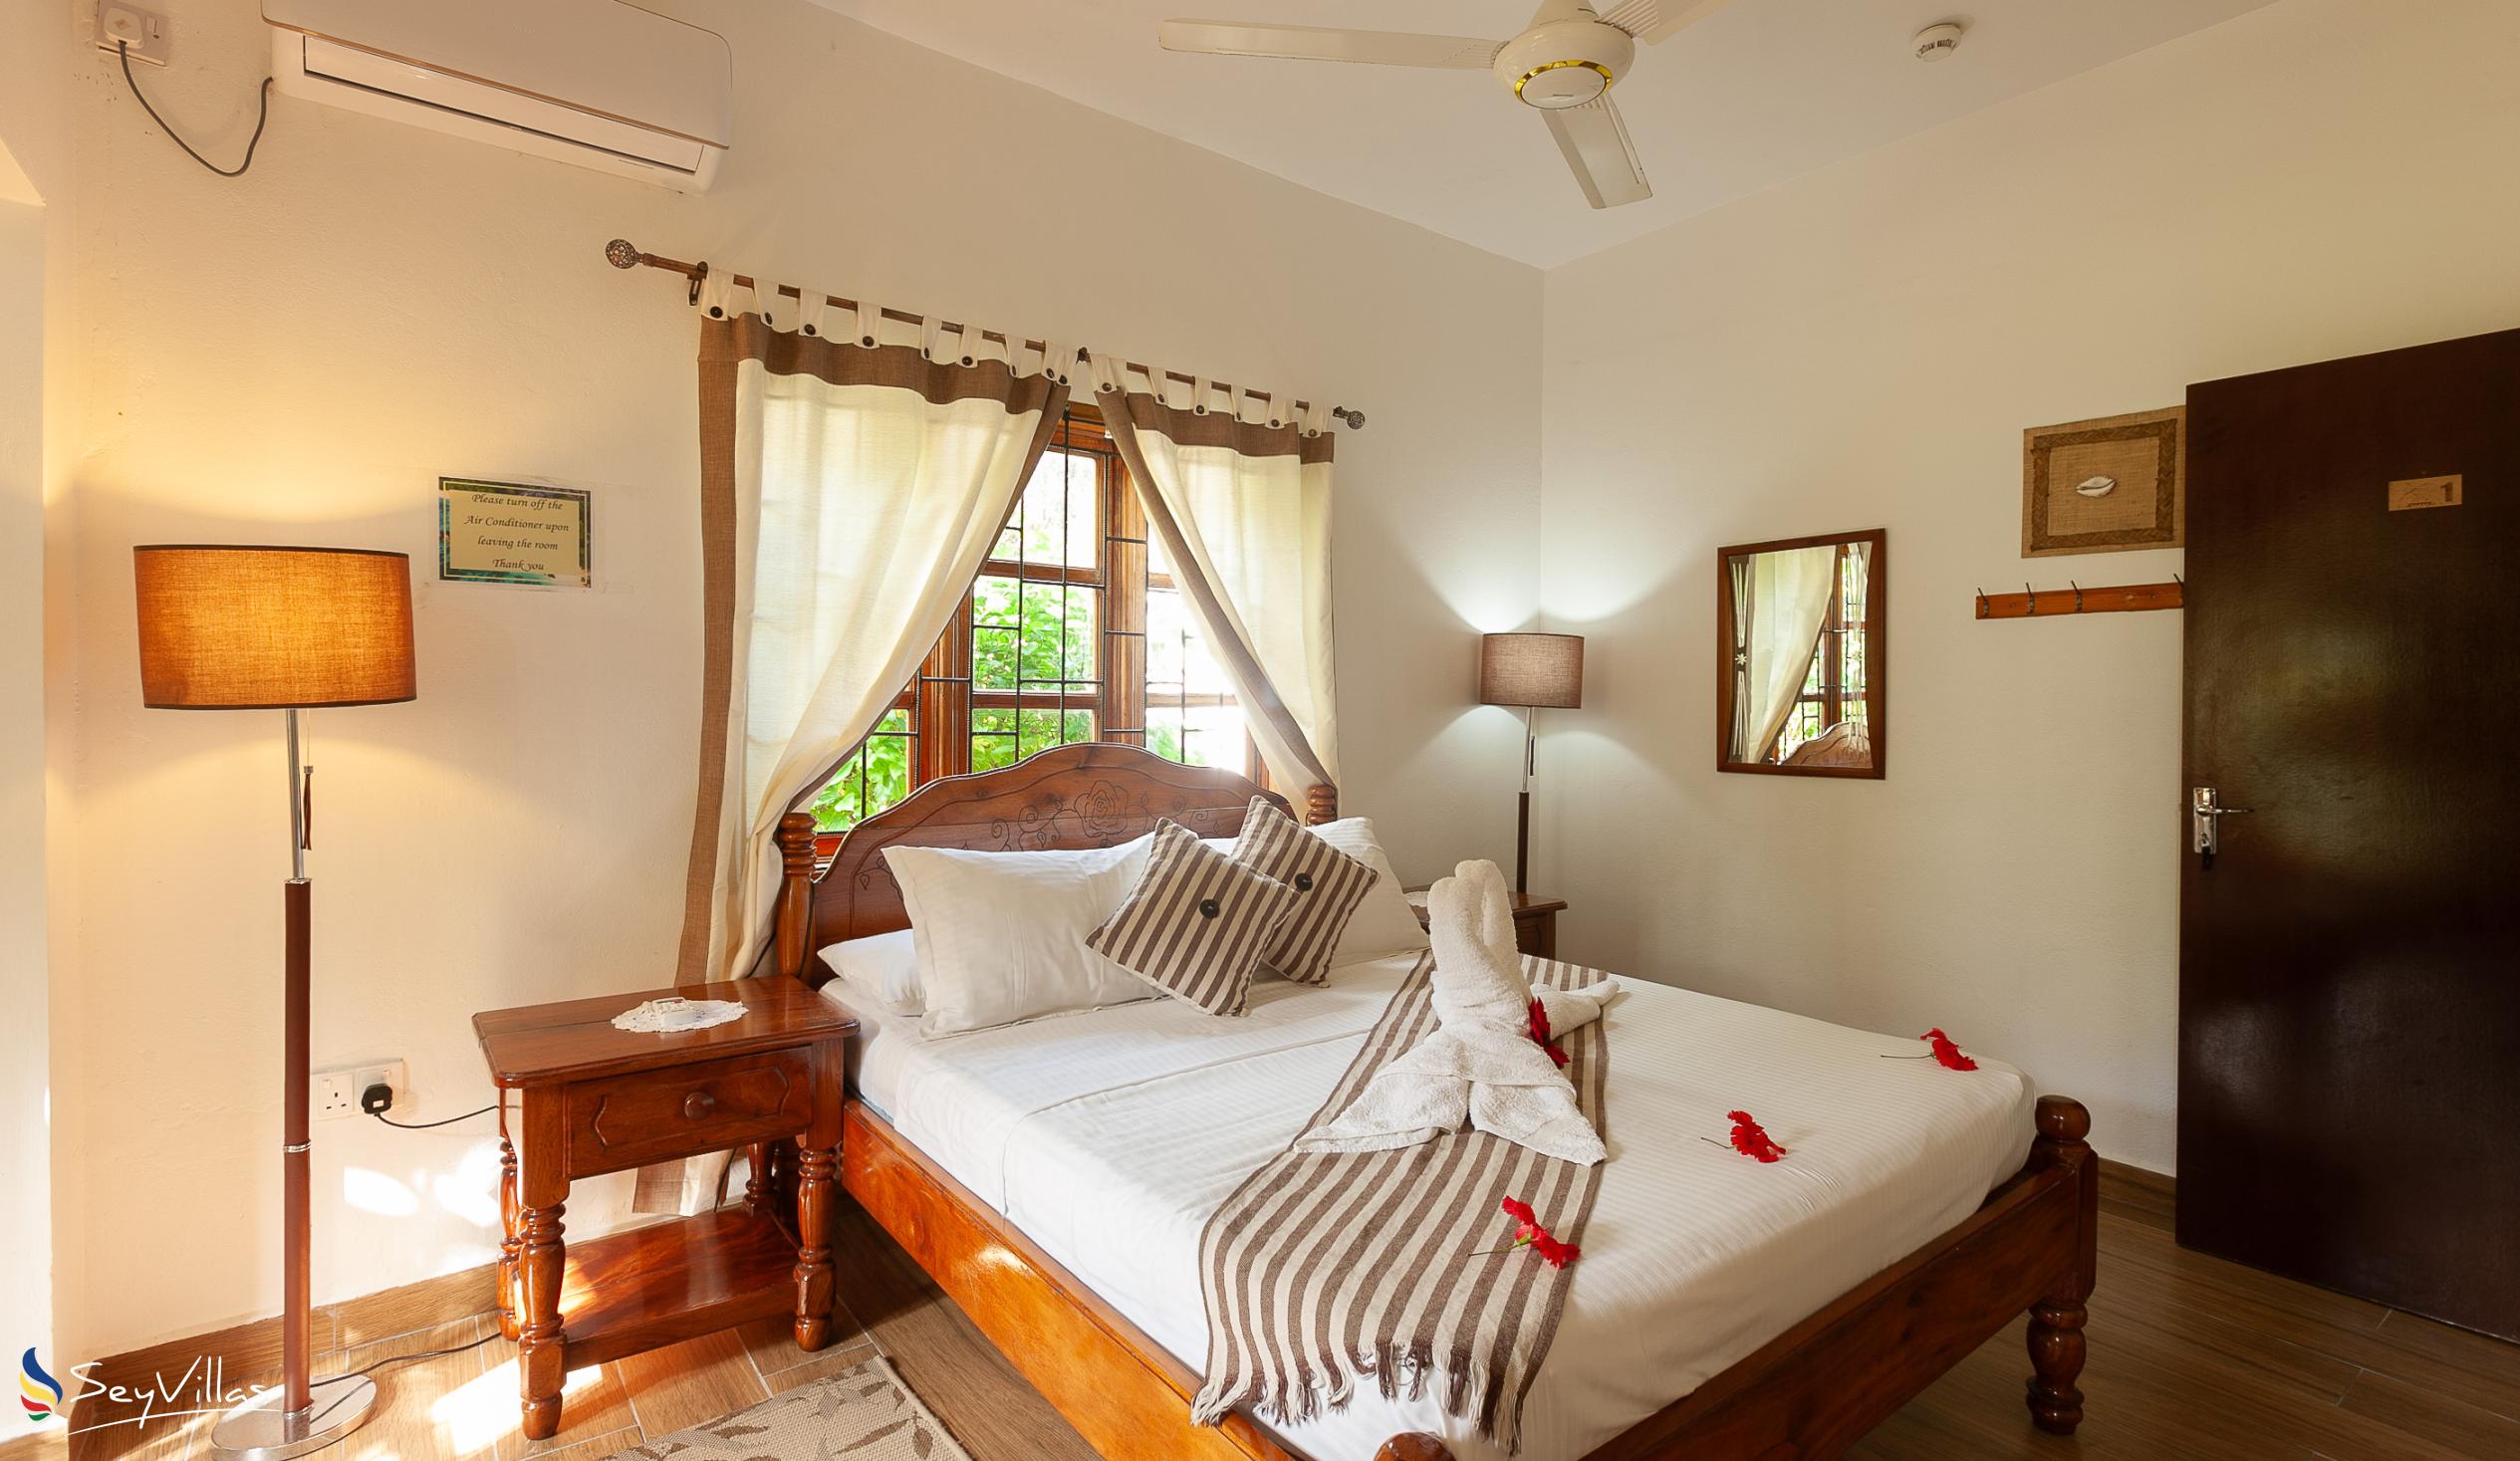 Photo 72: Tannette's Villa - Standard Double Room - La Digue (Seychelles)